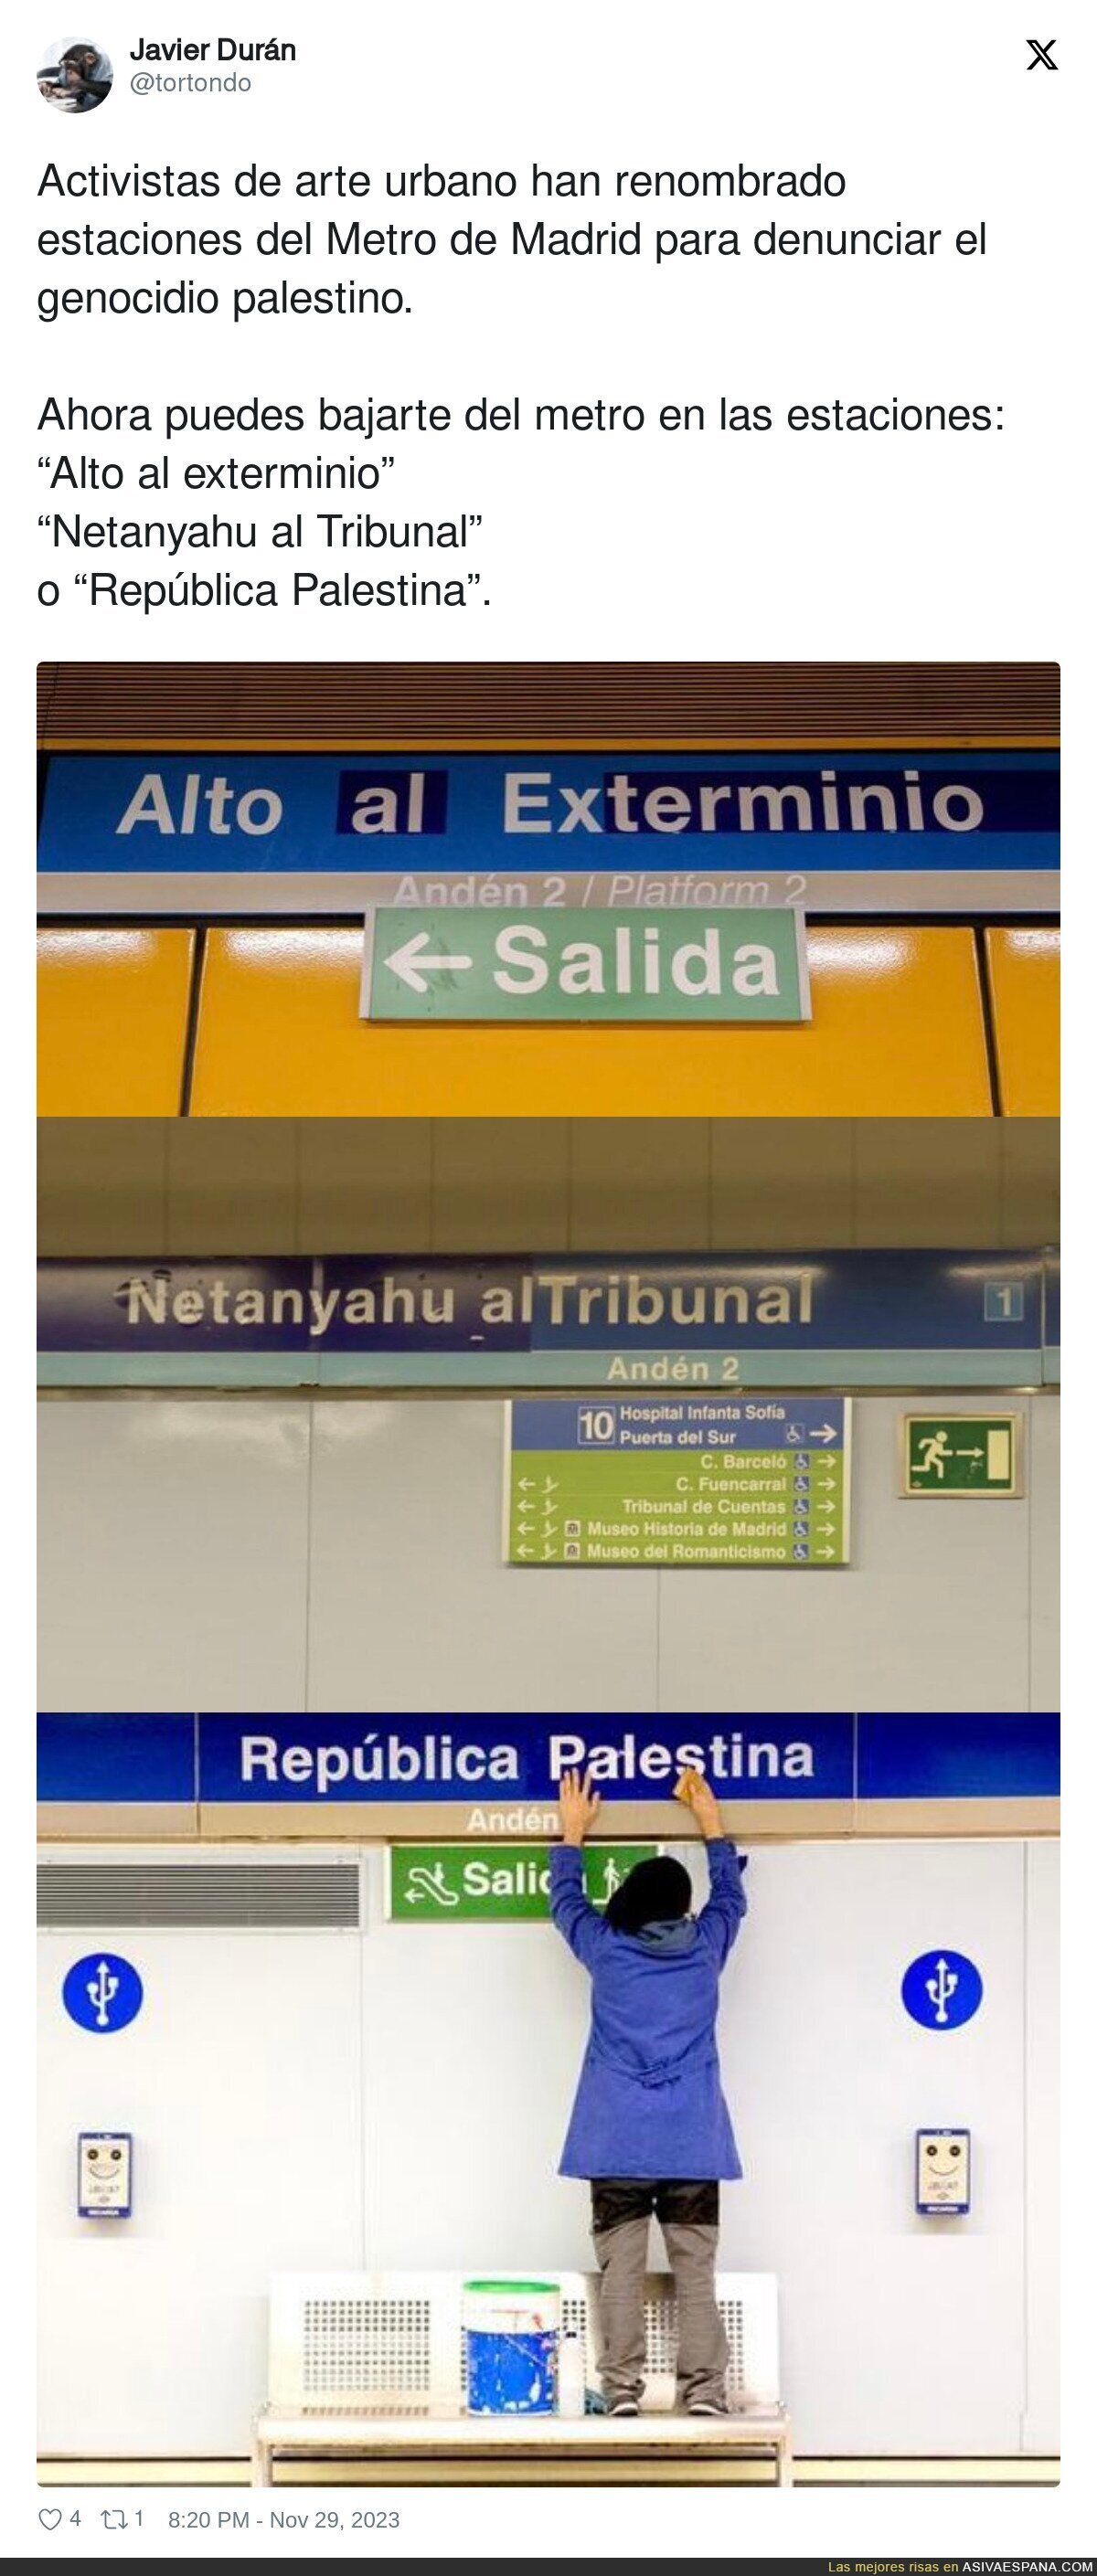 La genial acción de unos activistas en el Metro de Madrid cambiando los nombres